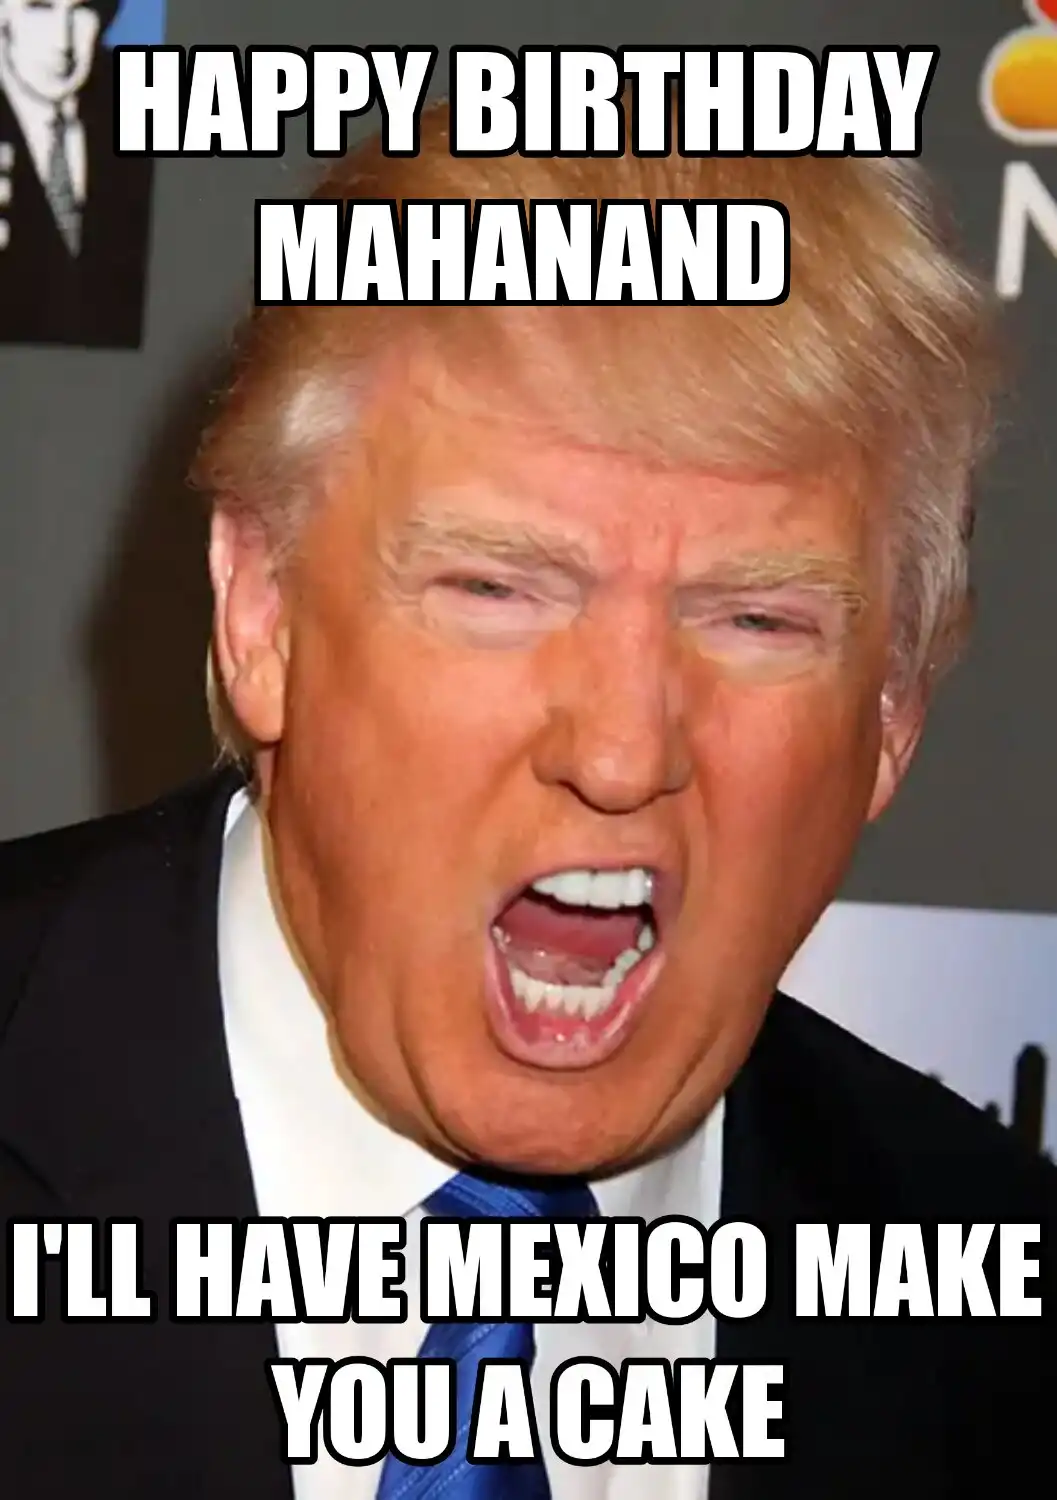 Happy Birthday Mahanand Mexico Make You A Cake Meme